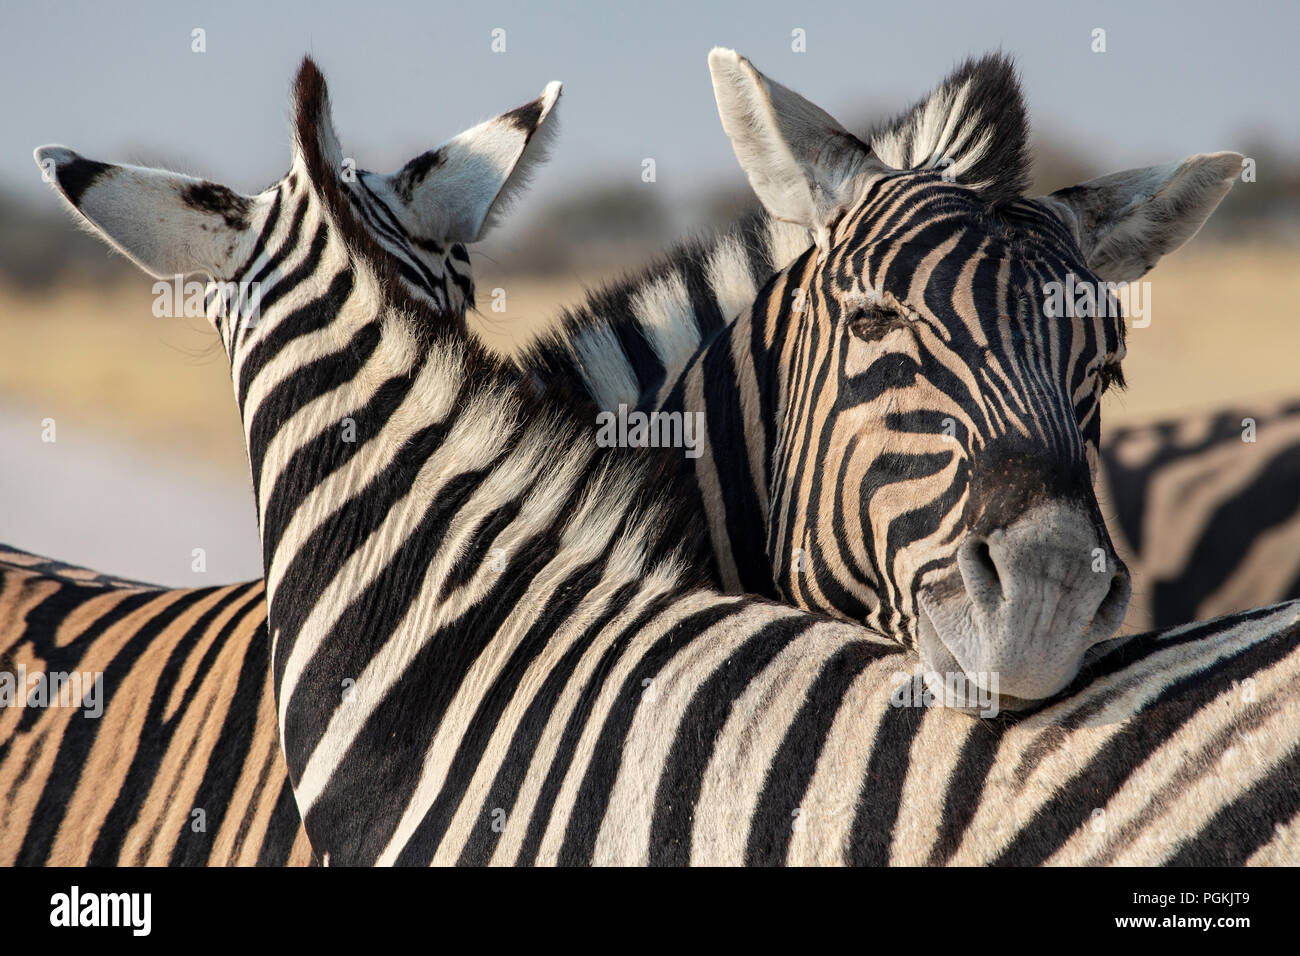 Deux plaines ou le zèbre de Burchell - Equus quagga Burchellii Equus ou repos - leurs têtes sur leurs dos dans le parc d'Etosha, Namibie. Banque D'Images